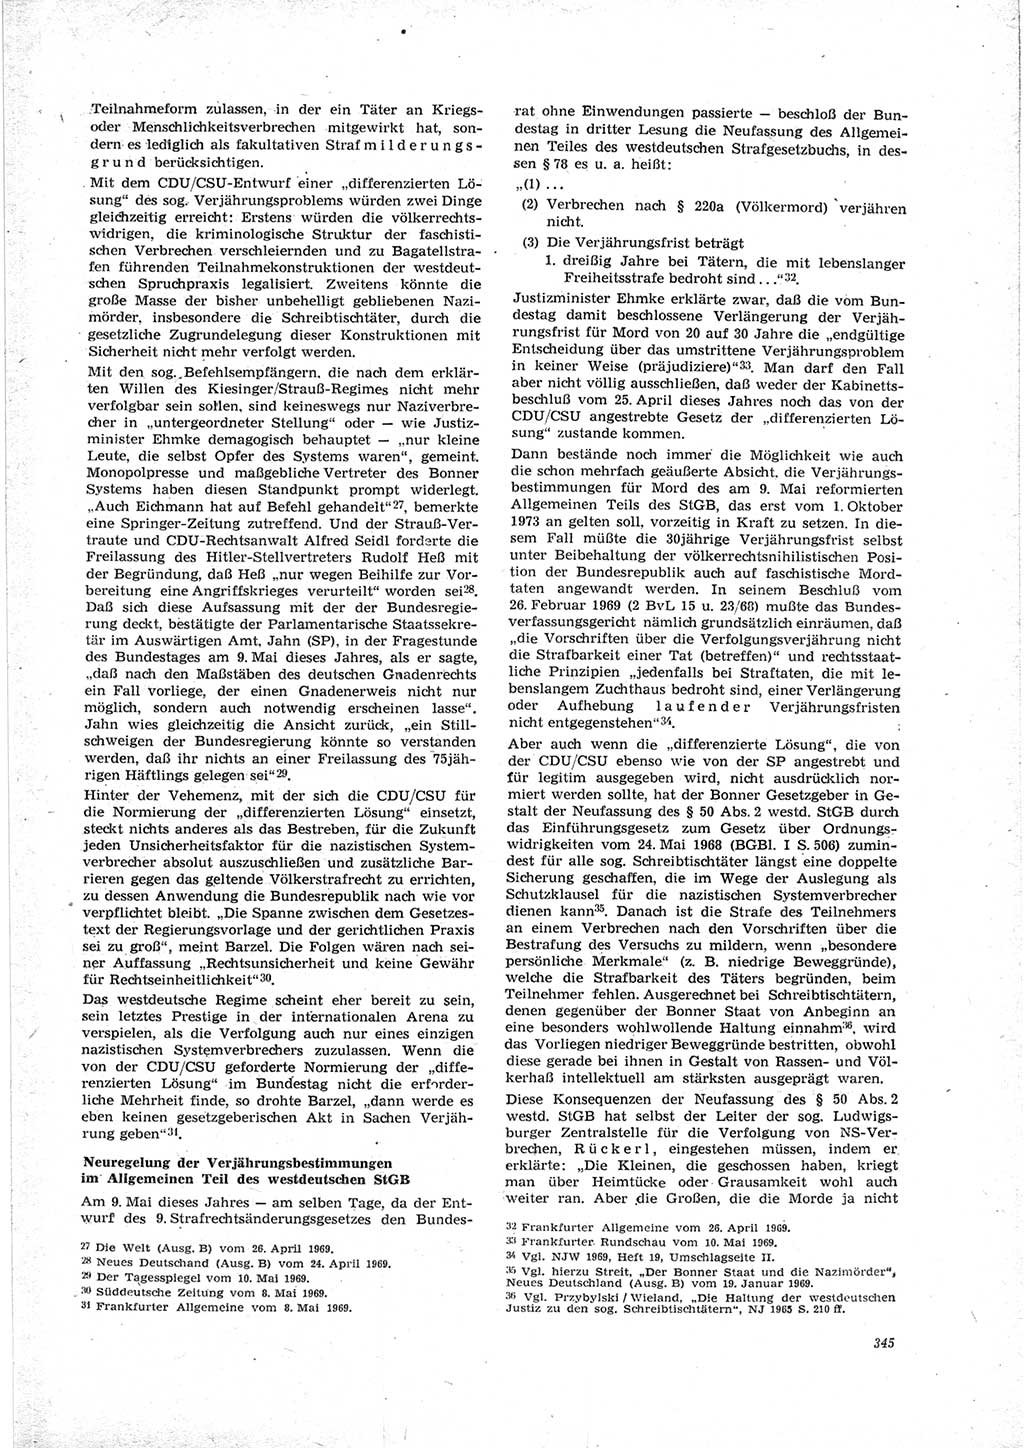 Neue Justiz (NJ), Zeitschrift für Recht und Rechtswissenschaft [Deutsche Demokratische Republik (DDR)], 23. Jahrgang 1969, Seite 345 (NJ DDR 1969, S. 345)